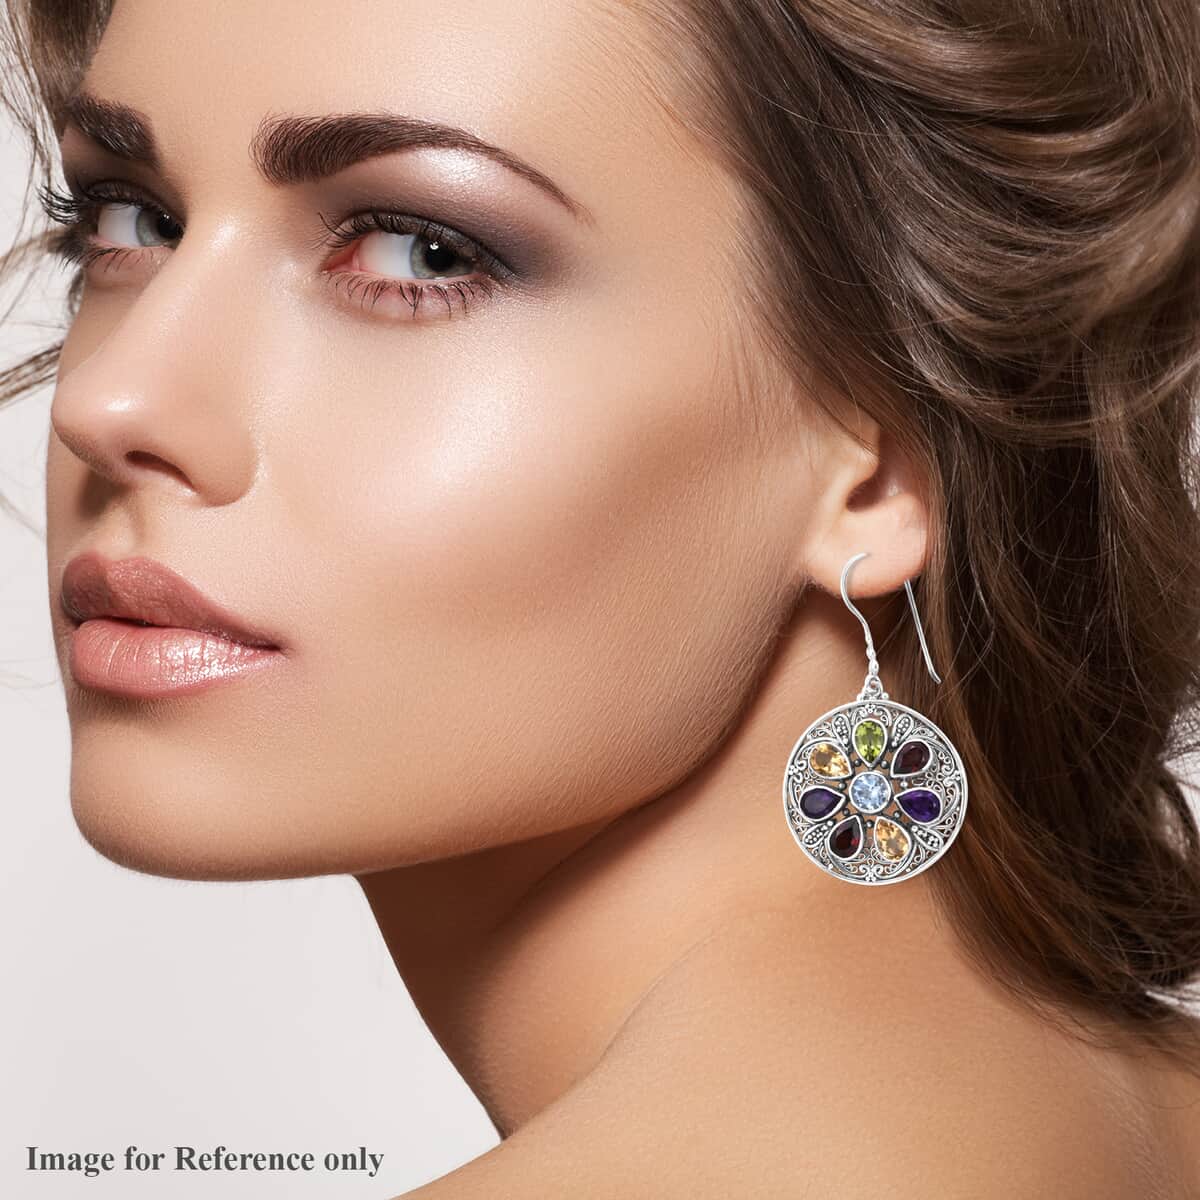 Bali Legacy Multi Gemstone Floral Earrings in Sterling Silver 13.40 ctw image number 2